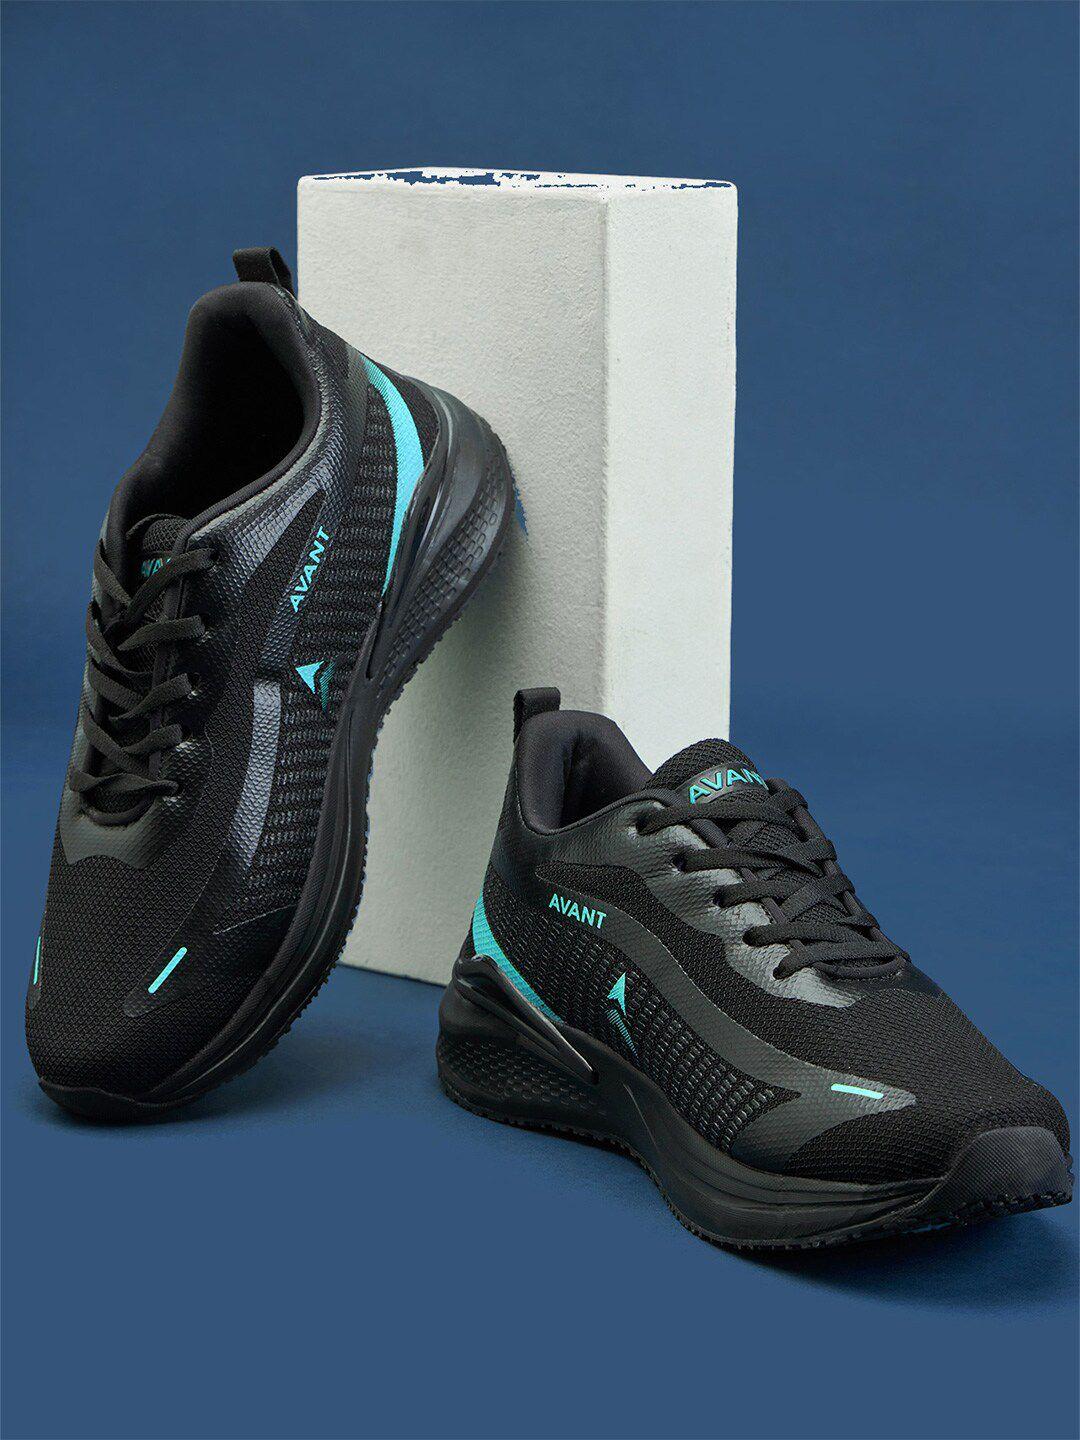 avant-men-panther-sports-shoes